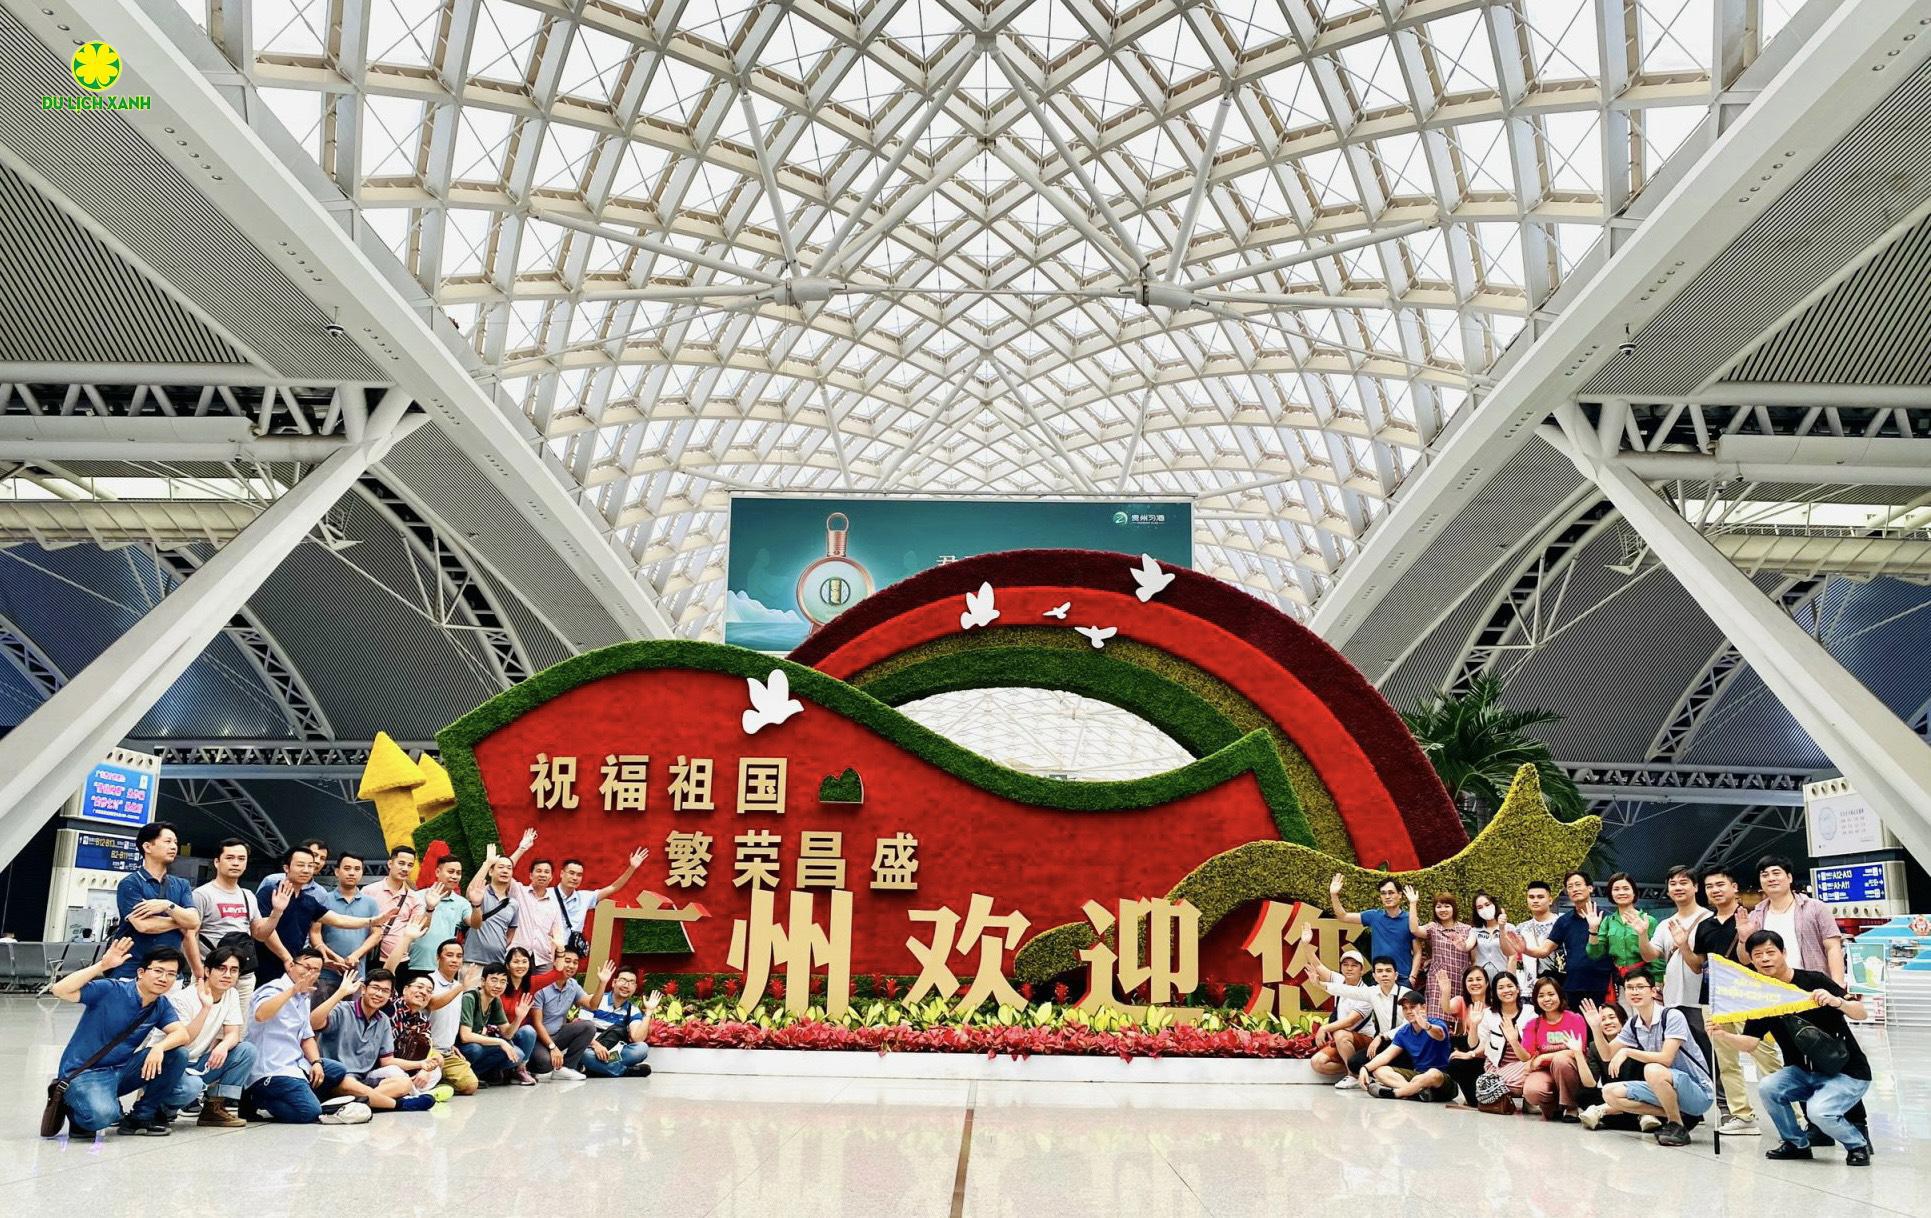 Hội chợ Canton Fair Quảng Châu, Hội chợ Canton Fair Trung Quốc